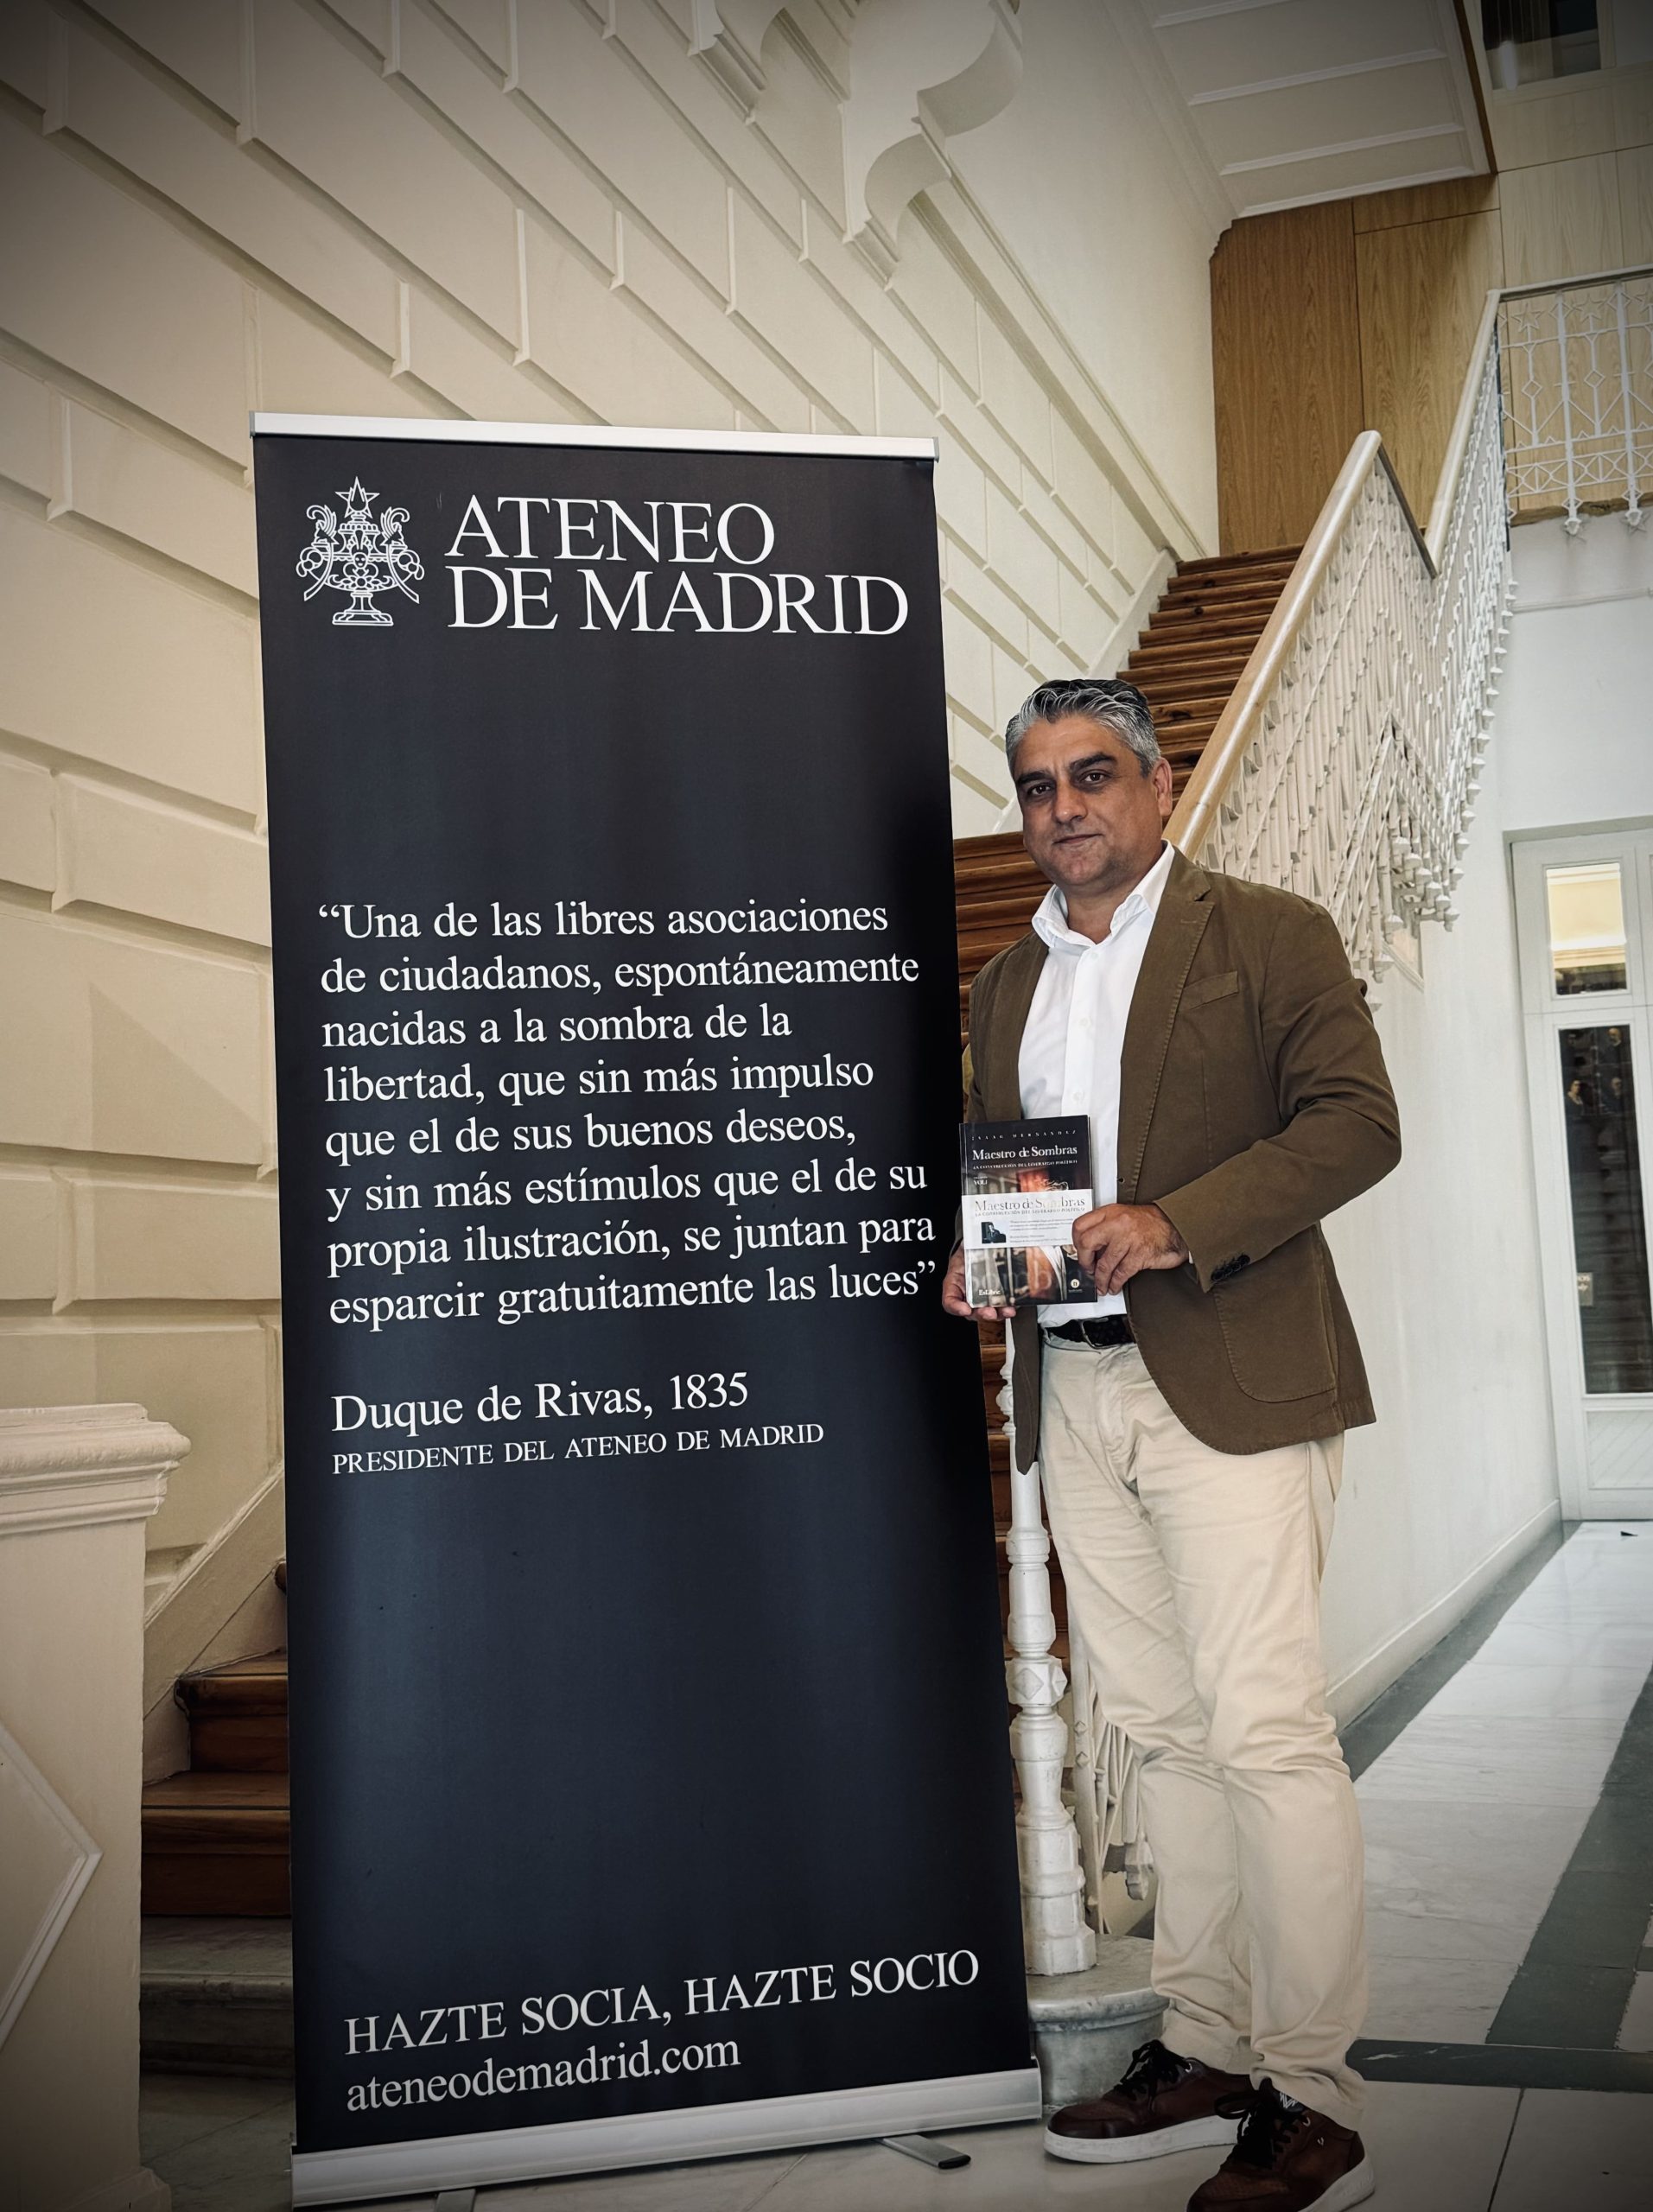 El Ateneo de Madrid acogerá en noviembre el encuentro de liderazgo político con motivo de la presentación del libro ‘Maestro de Sombras’ de Isaac Hernández.